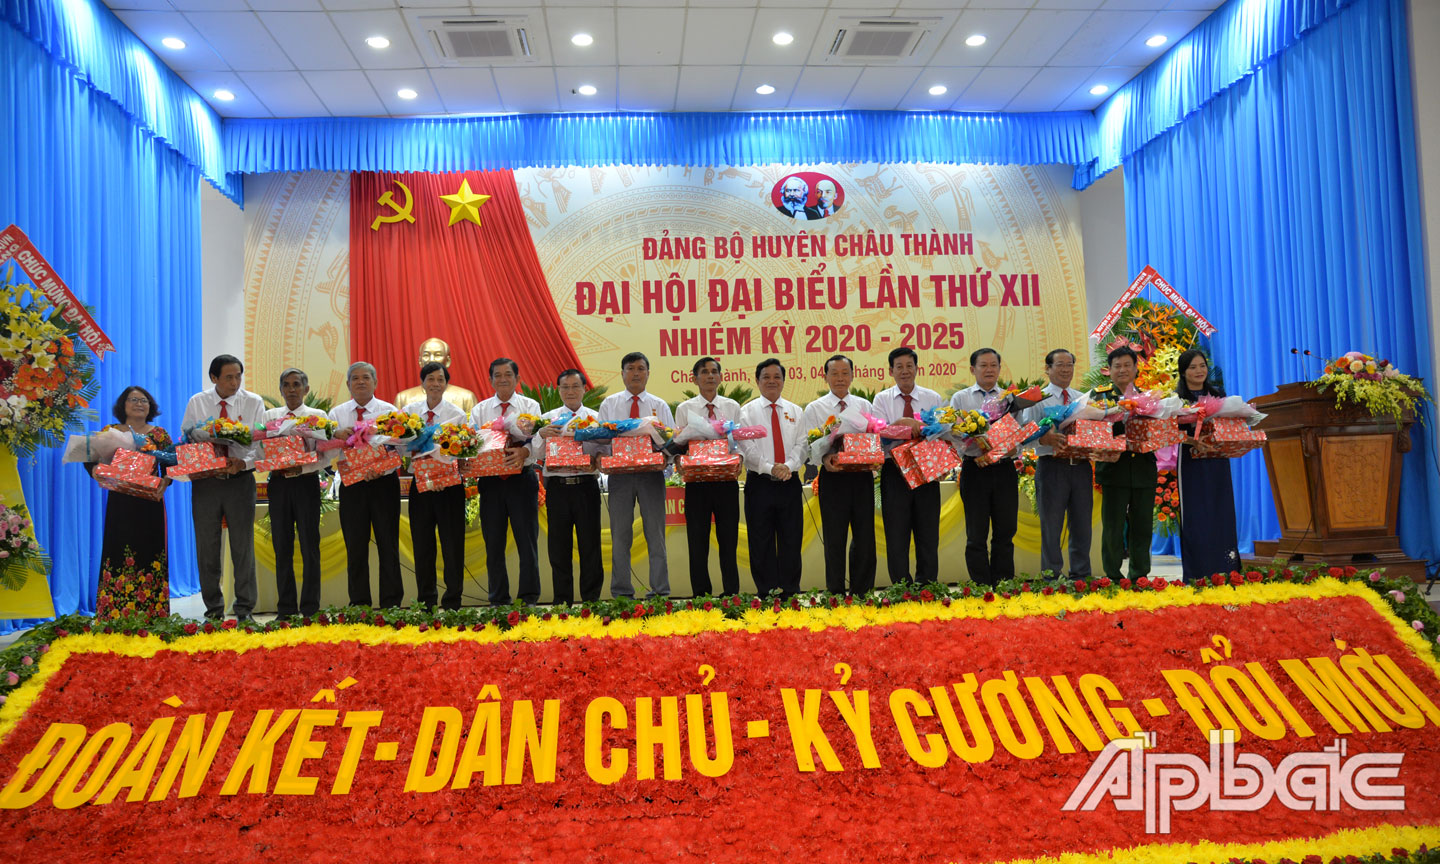 Đồng chí Trương Minh Tới trao tặng quà lưu niệm cho các đồng chí không tiếp tục tham gia cấp uỷ nhiệm kỳ 2020-2025